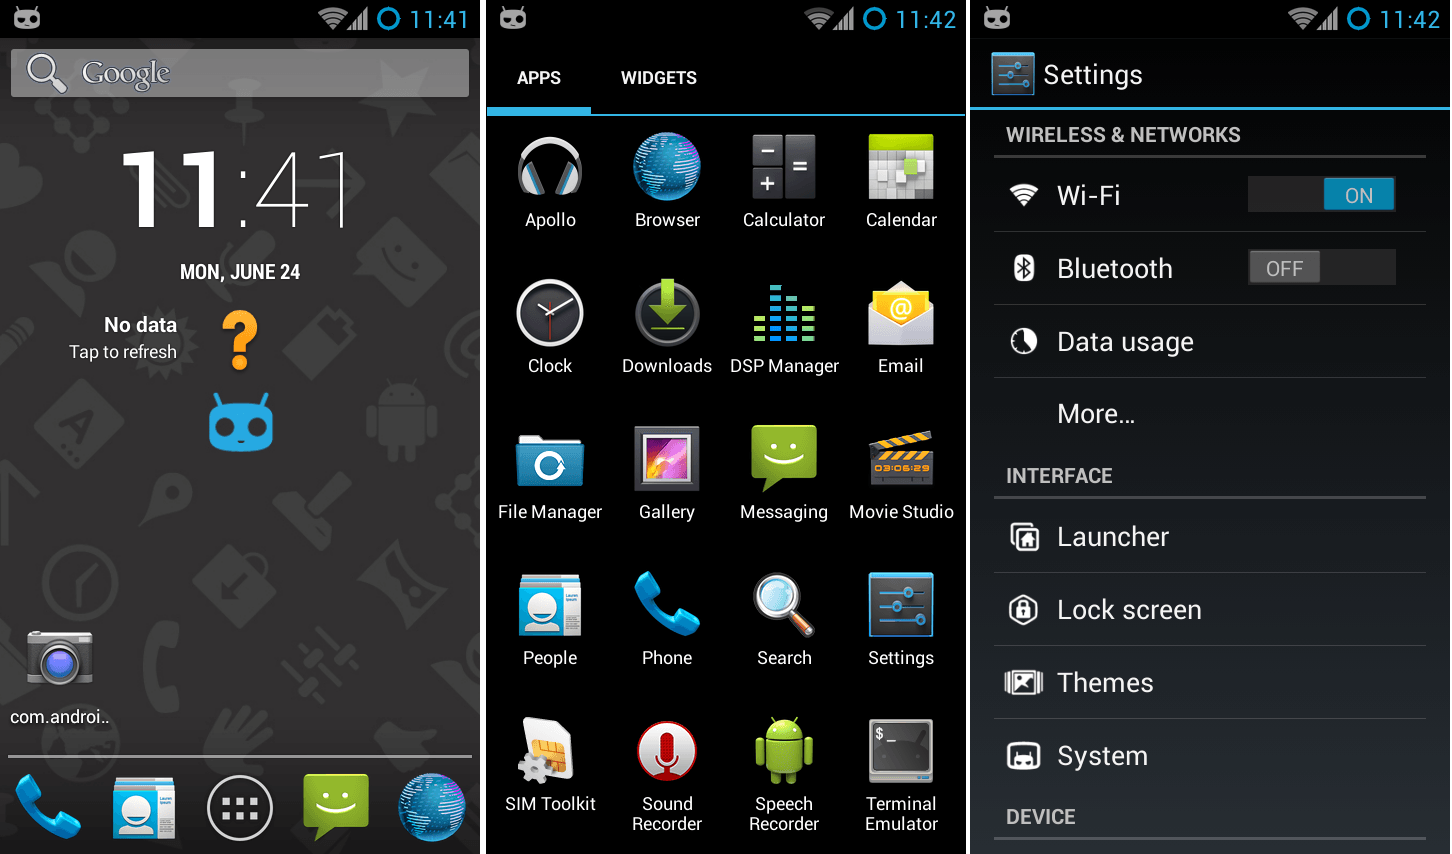 Install Sony Xperia Sola MT27i Android 4.2.2 CyanogenMod 10.1 ROM